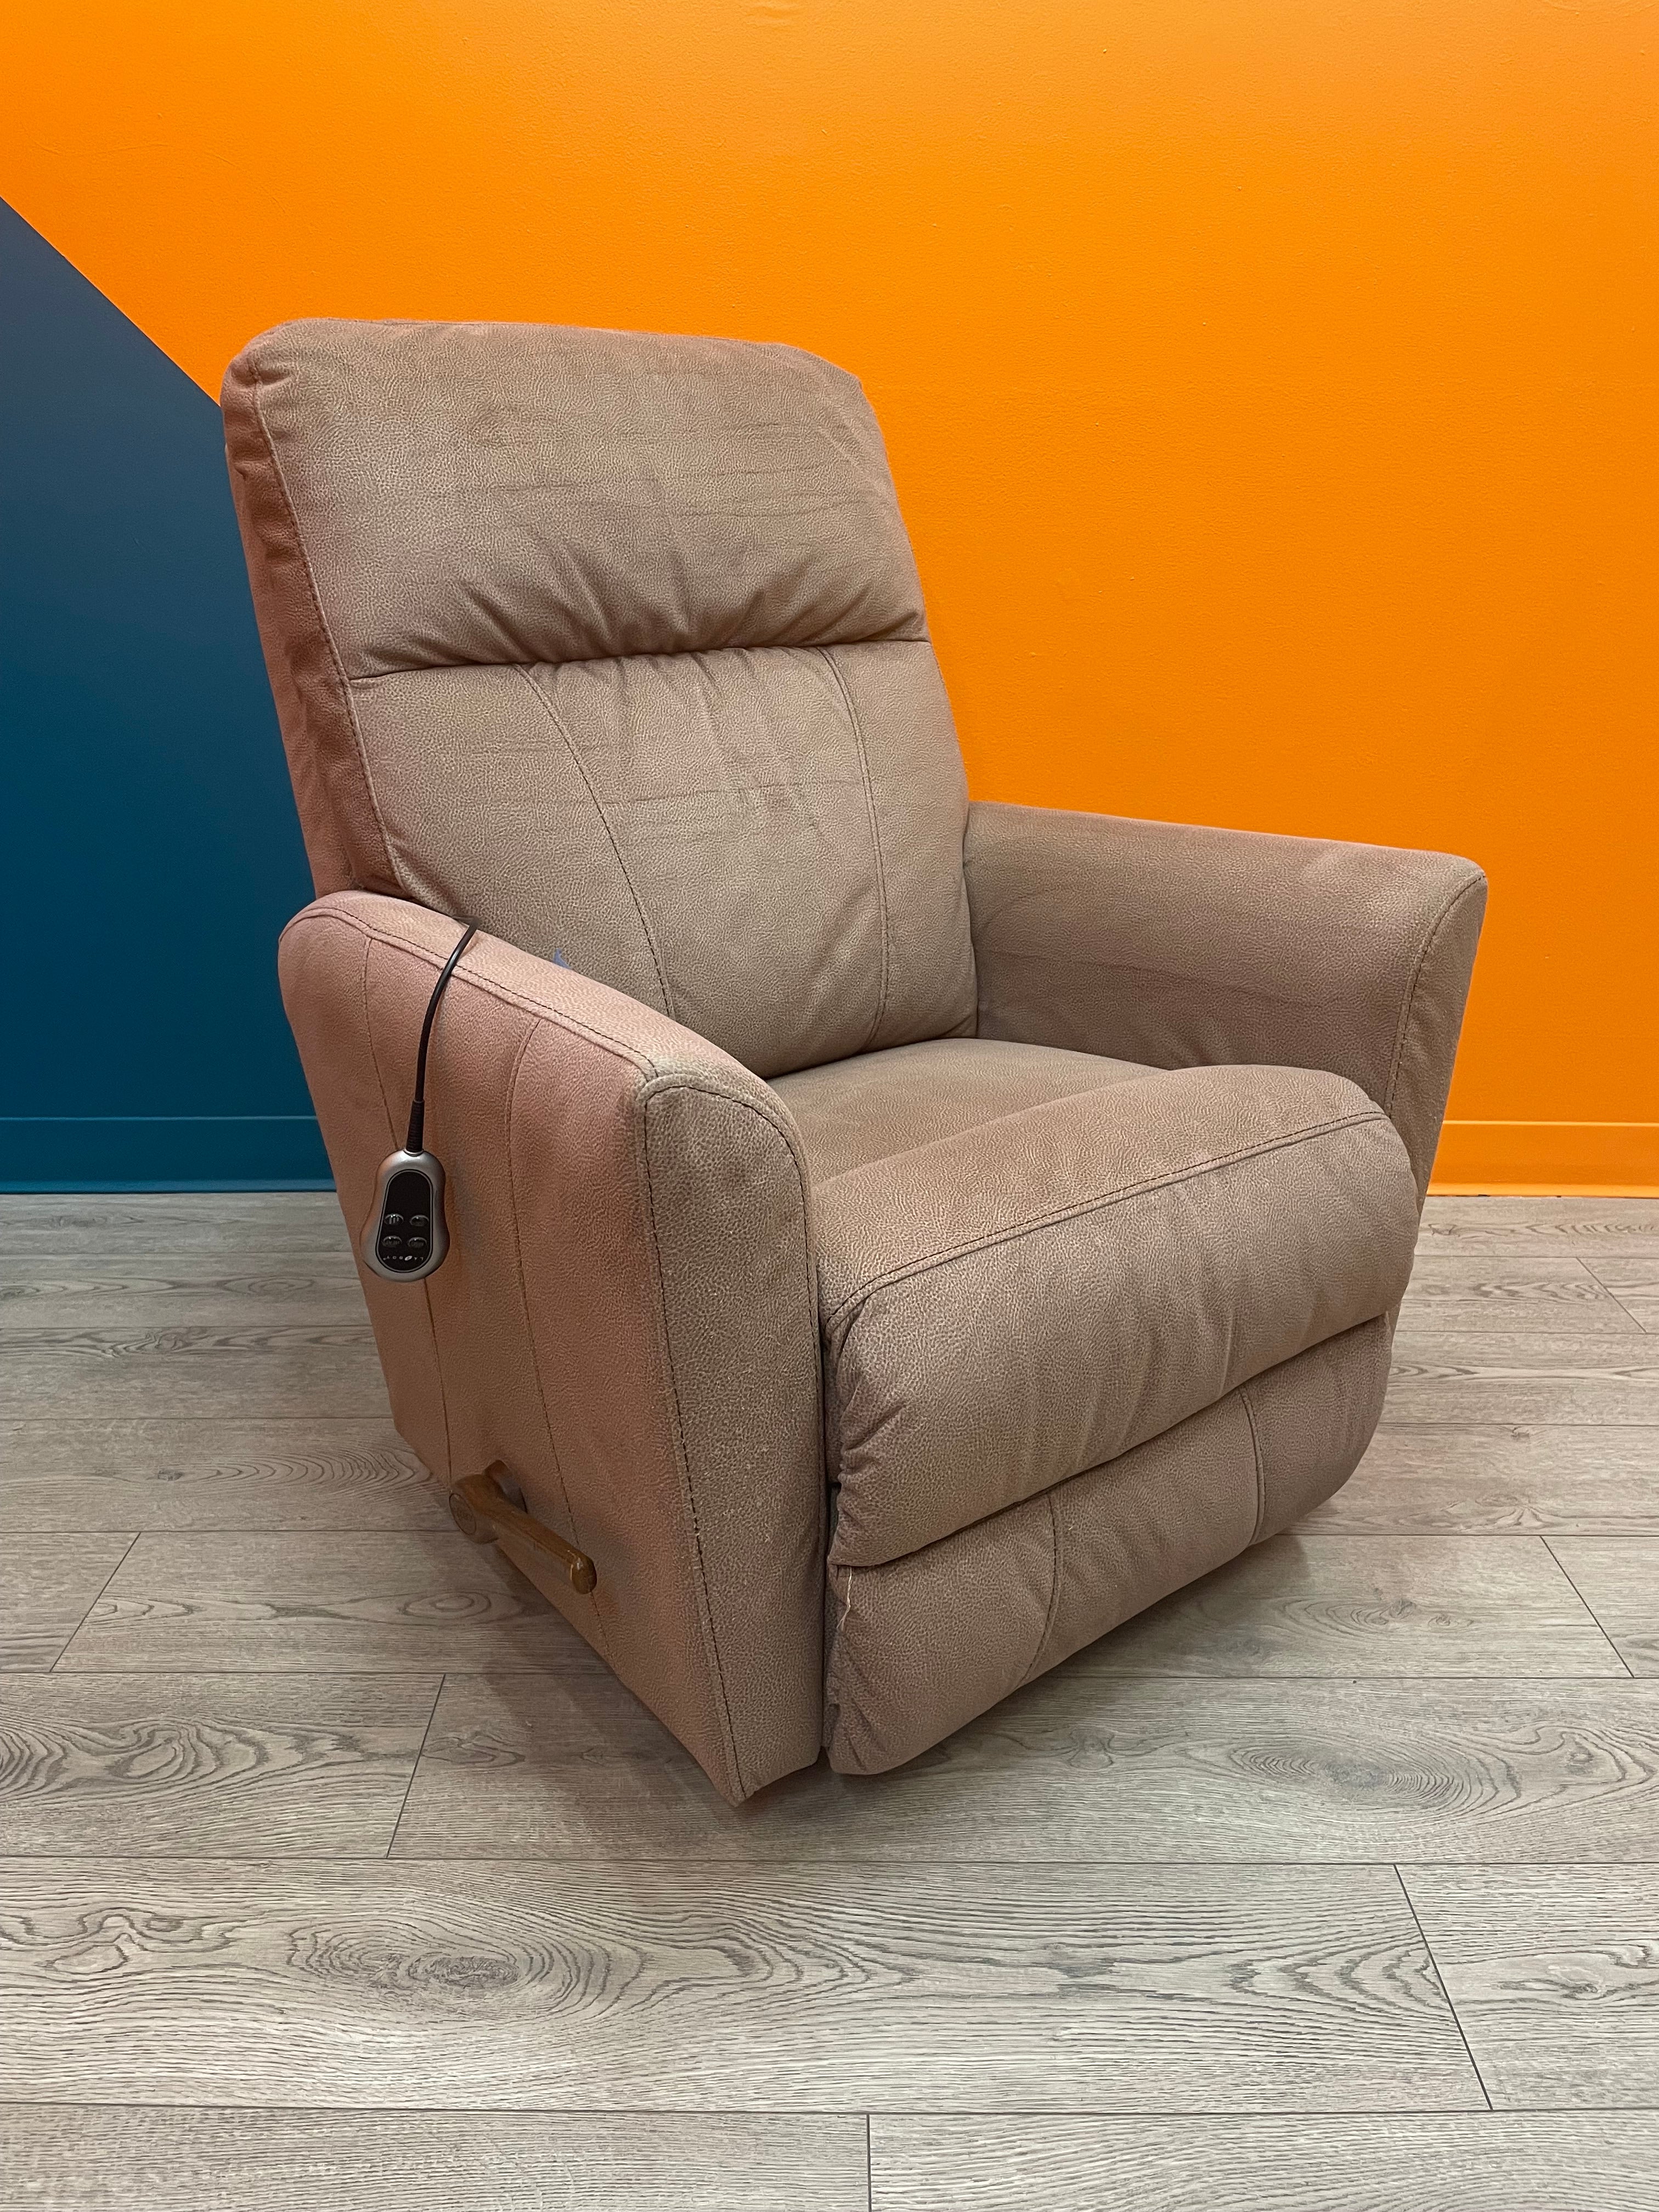 Electric La-Z-Boy Chair